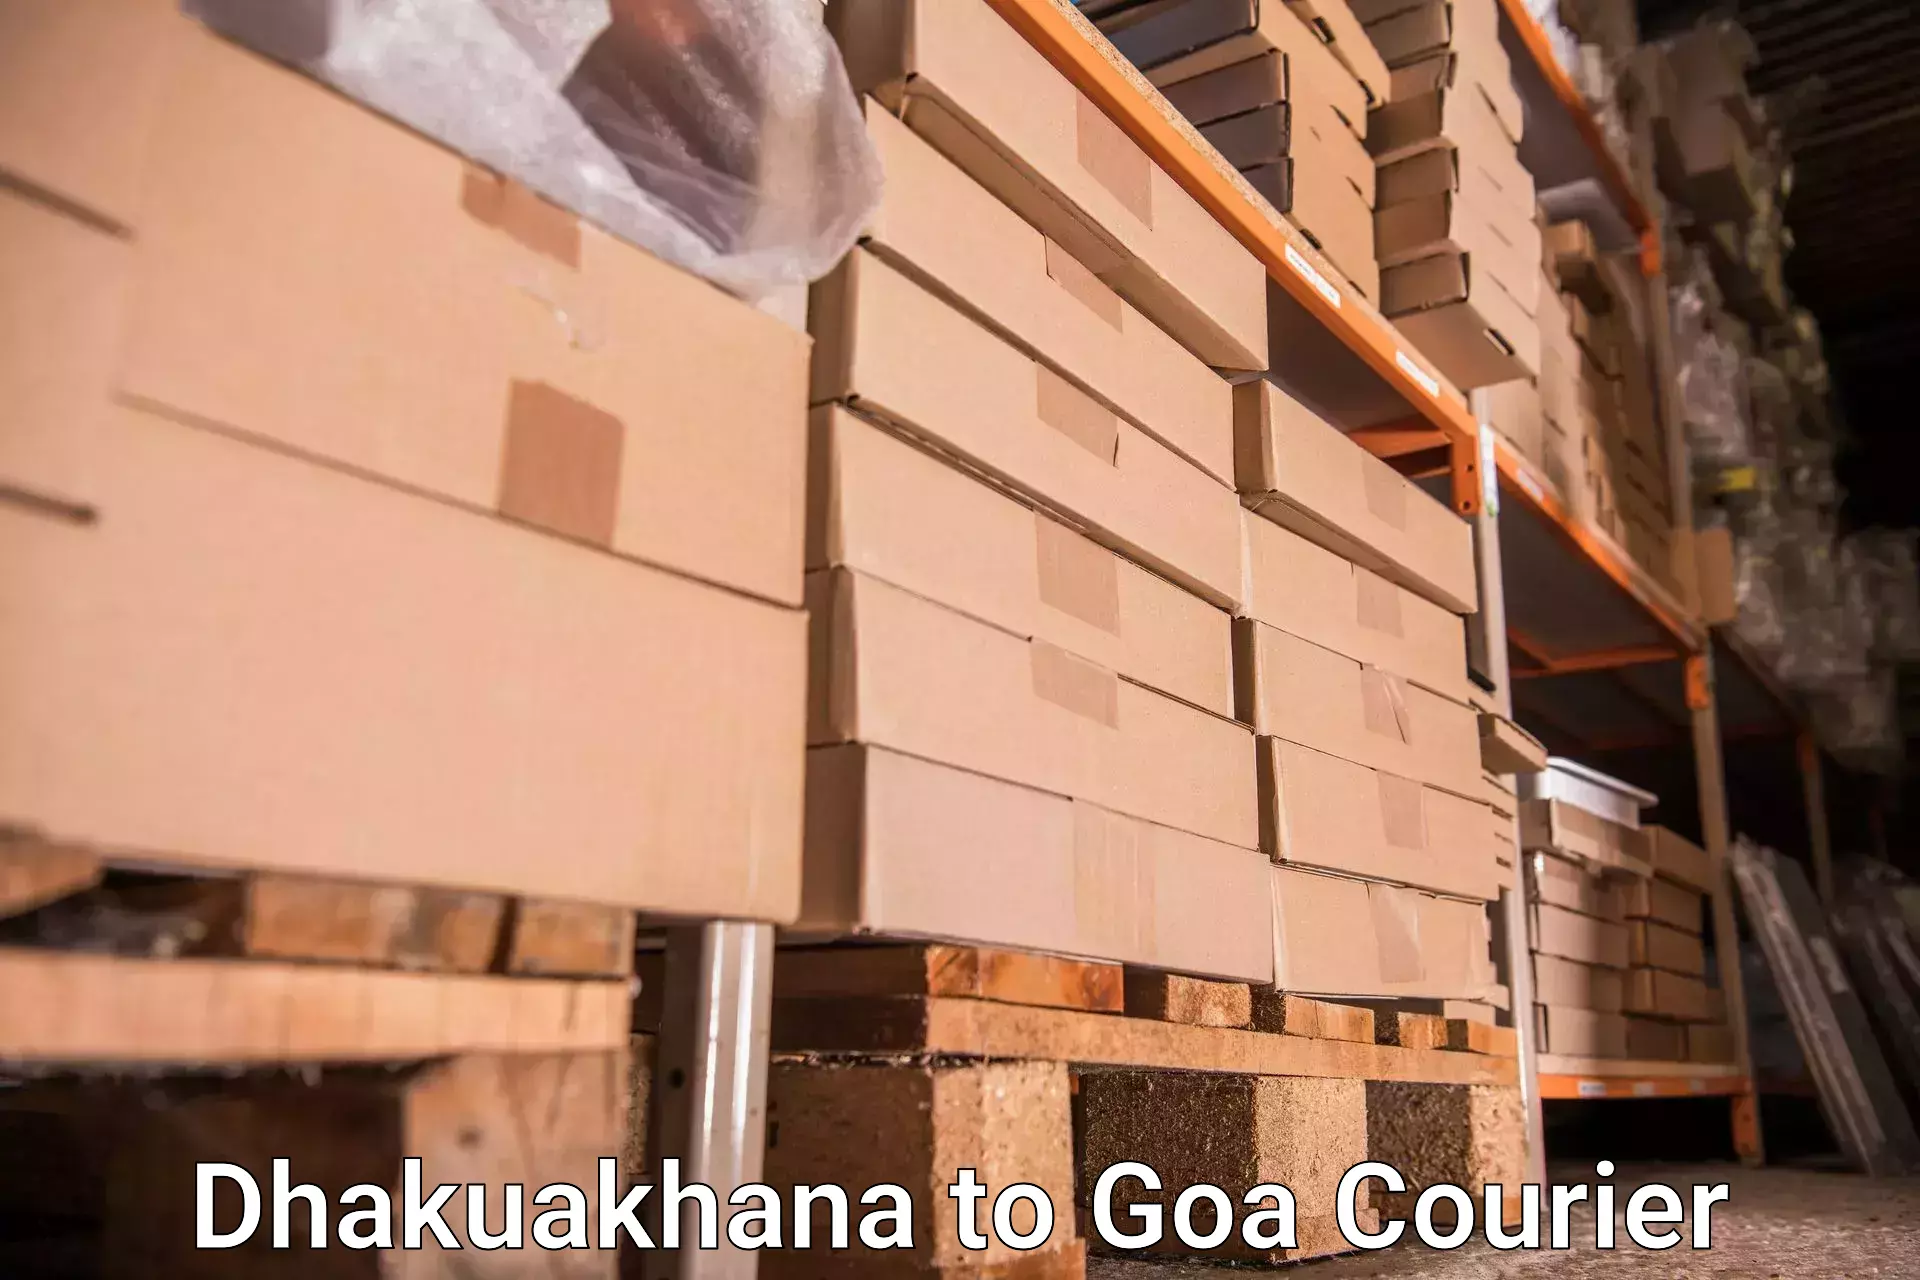 Baggage shipping service Dhakuakhana to Ponda